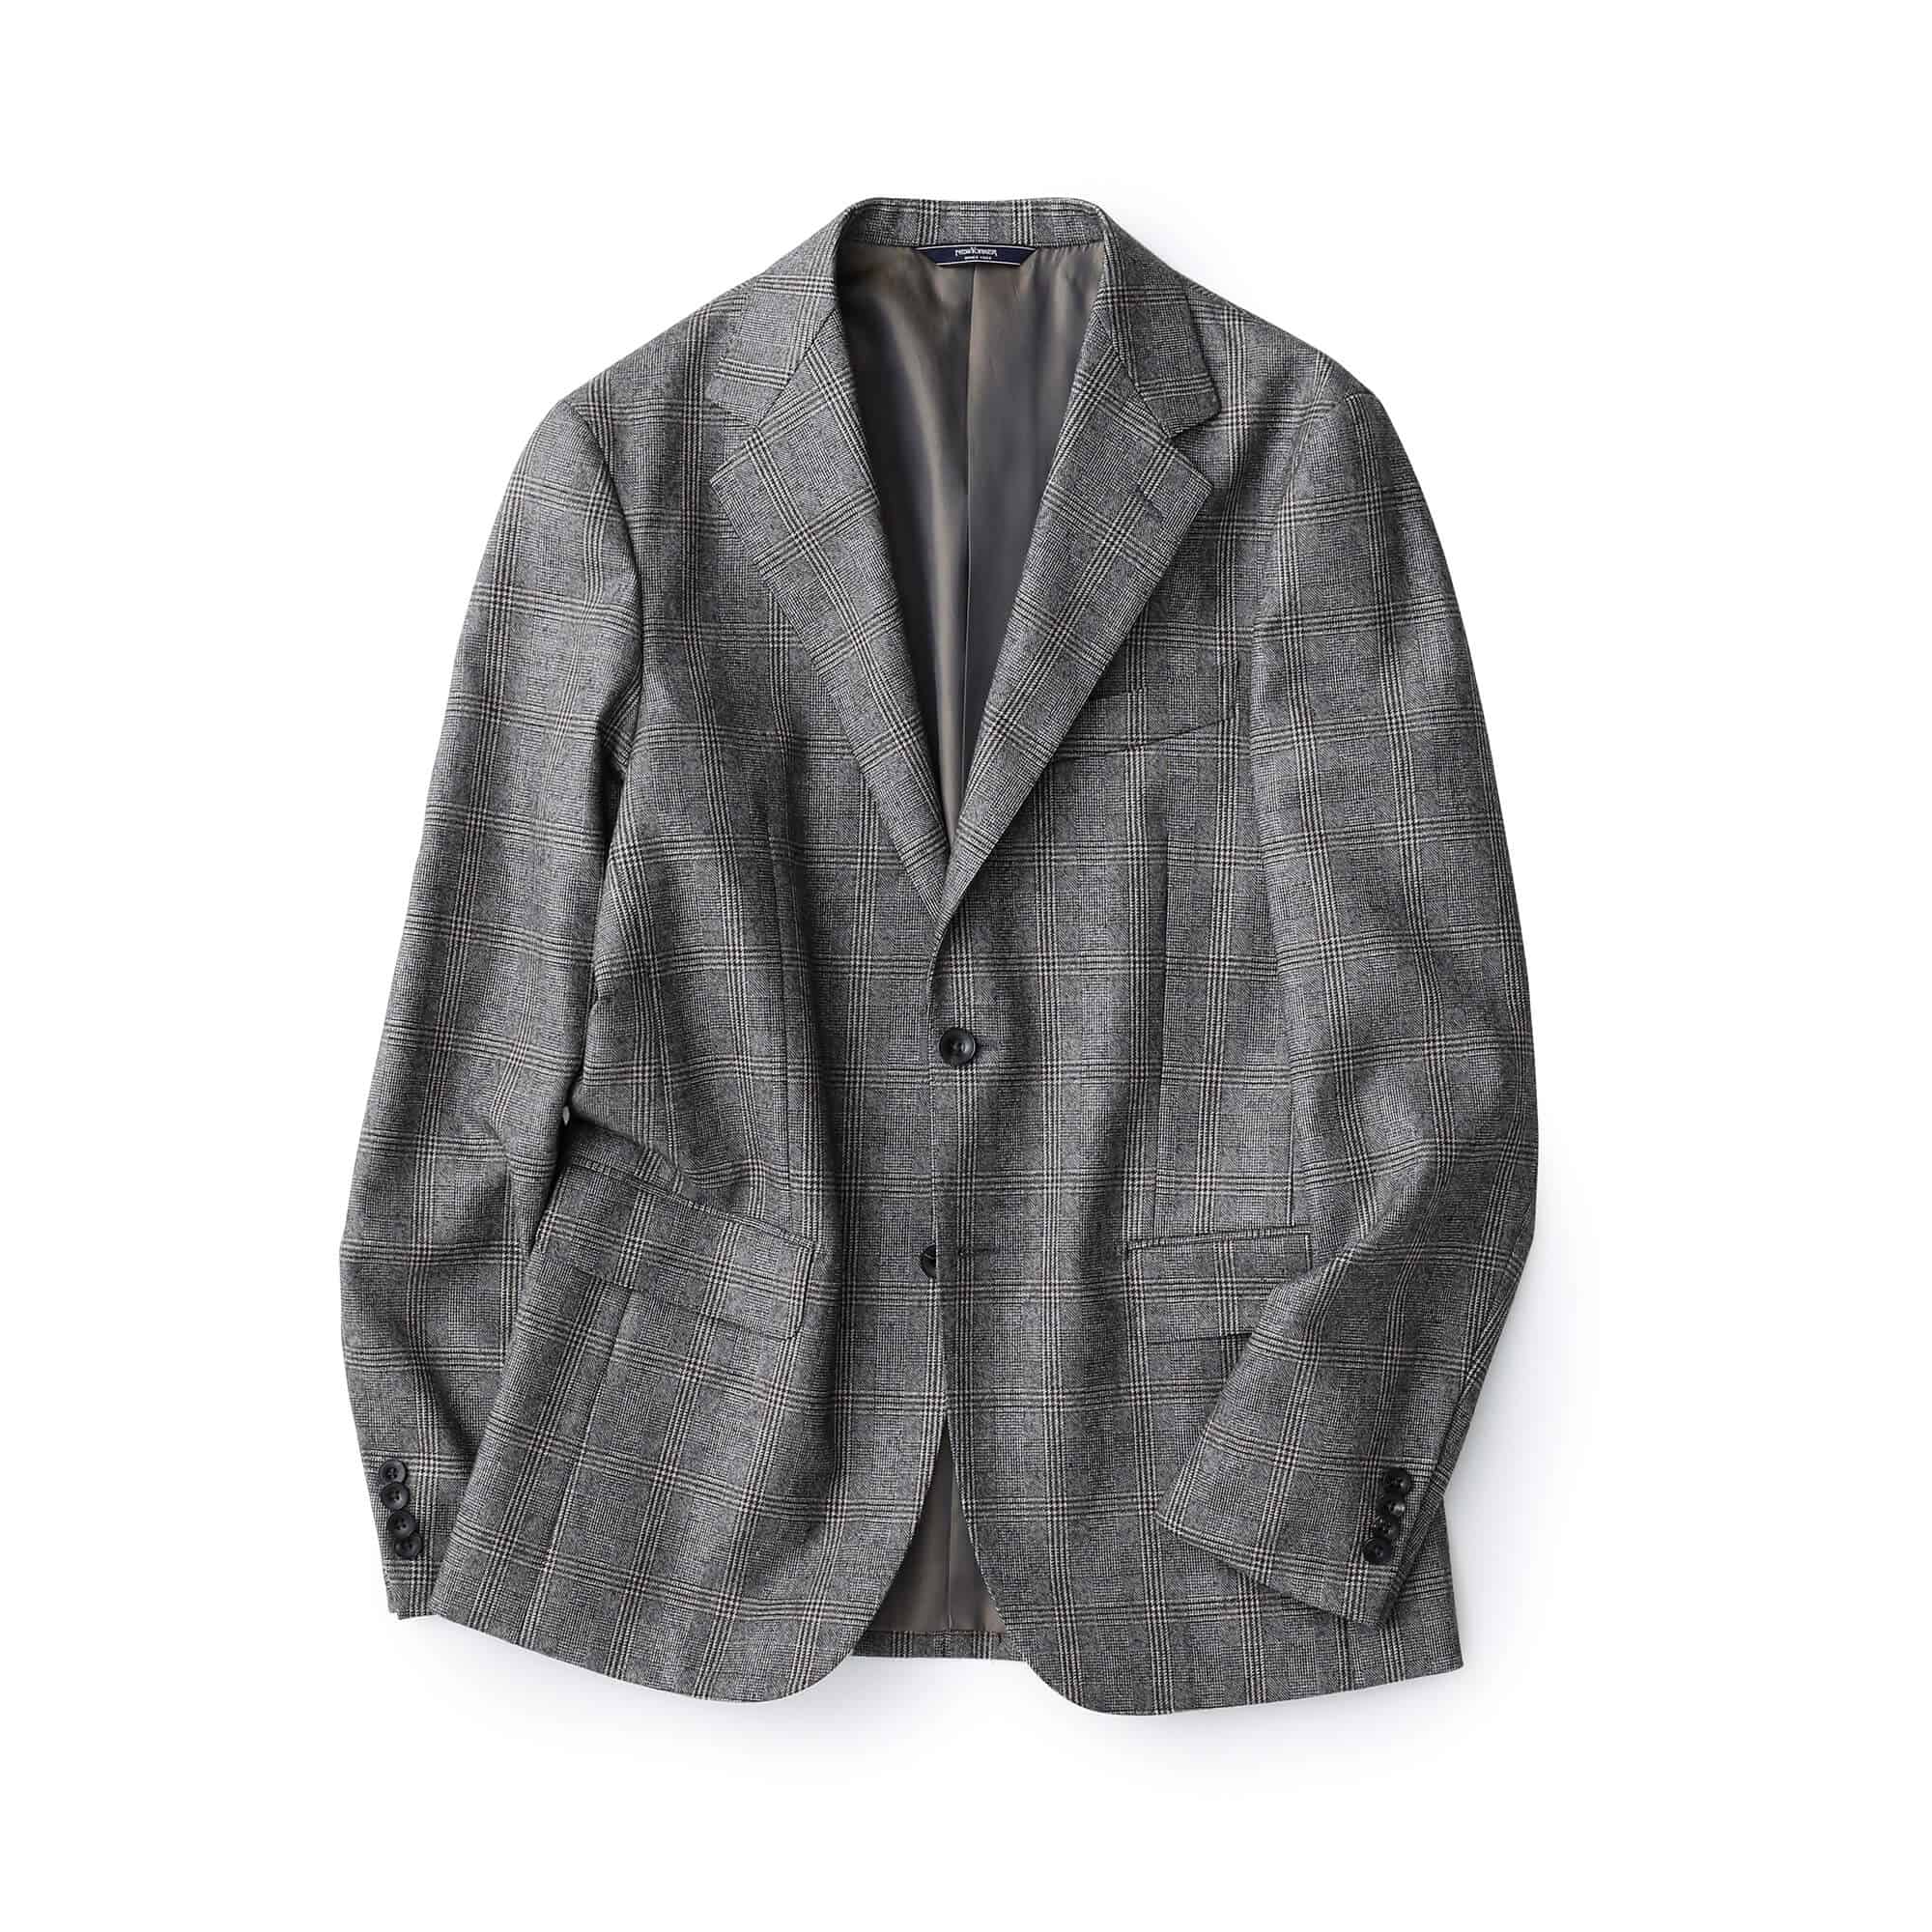 ブリティッシュチェックジャケット|ファッション通販のNY.online